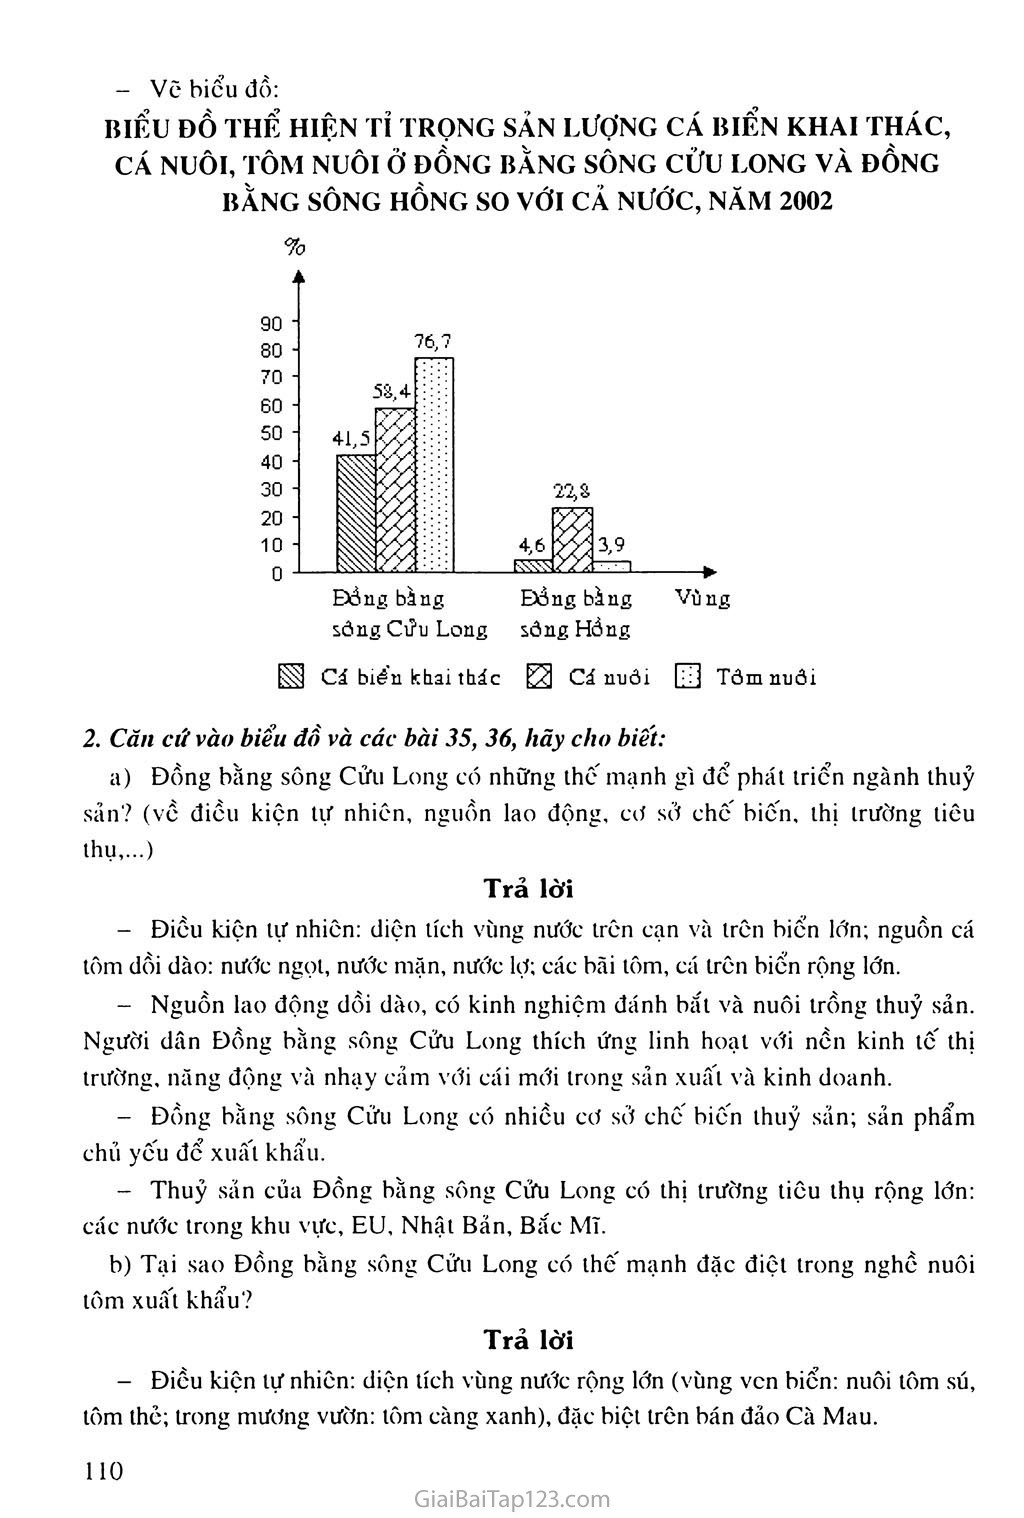 Bài 37. Thực hành: Vẽ và phân tích biểu đồ về tình hình sản xuất của ngành thủy sản ở Đồng bằng sông Cửu Long trang 2